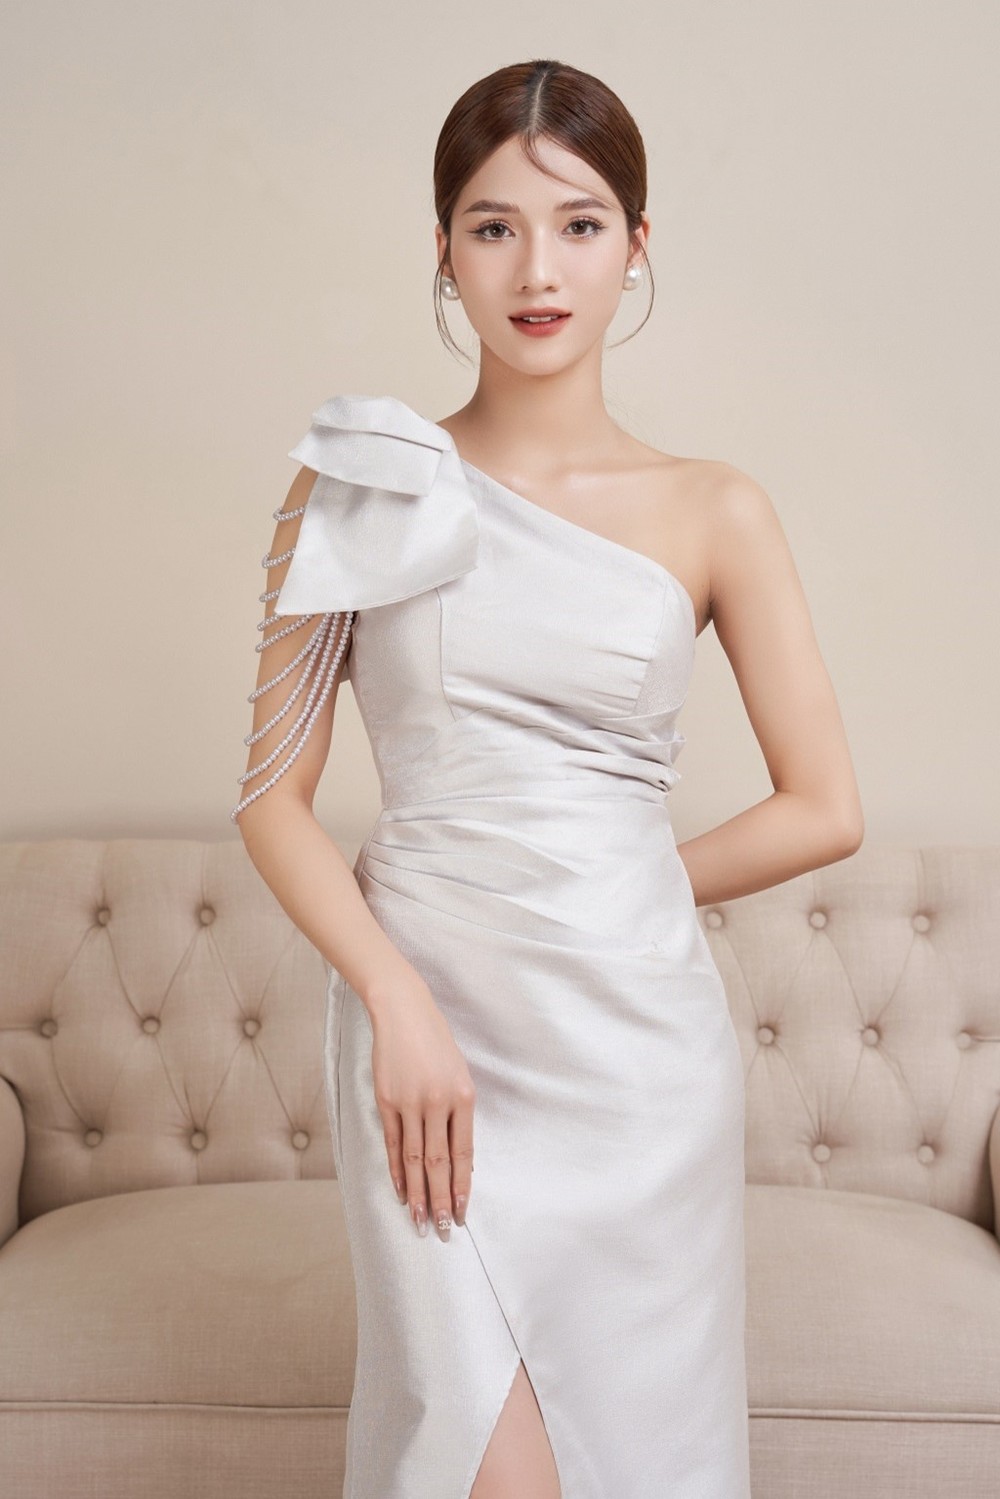 CEO thương hiệu thời trang Genni – Trang Nguyễn: “Để thành công, đam mê thôi là chưa đủ”